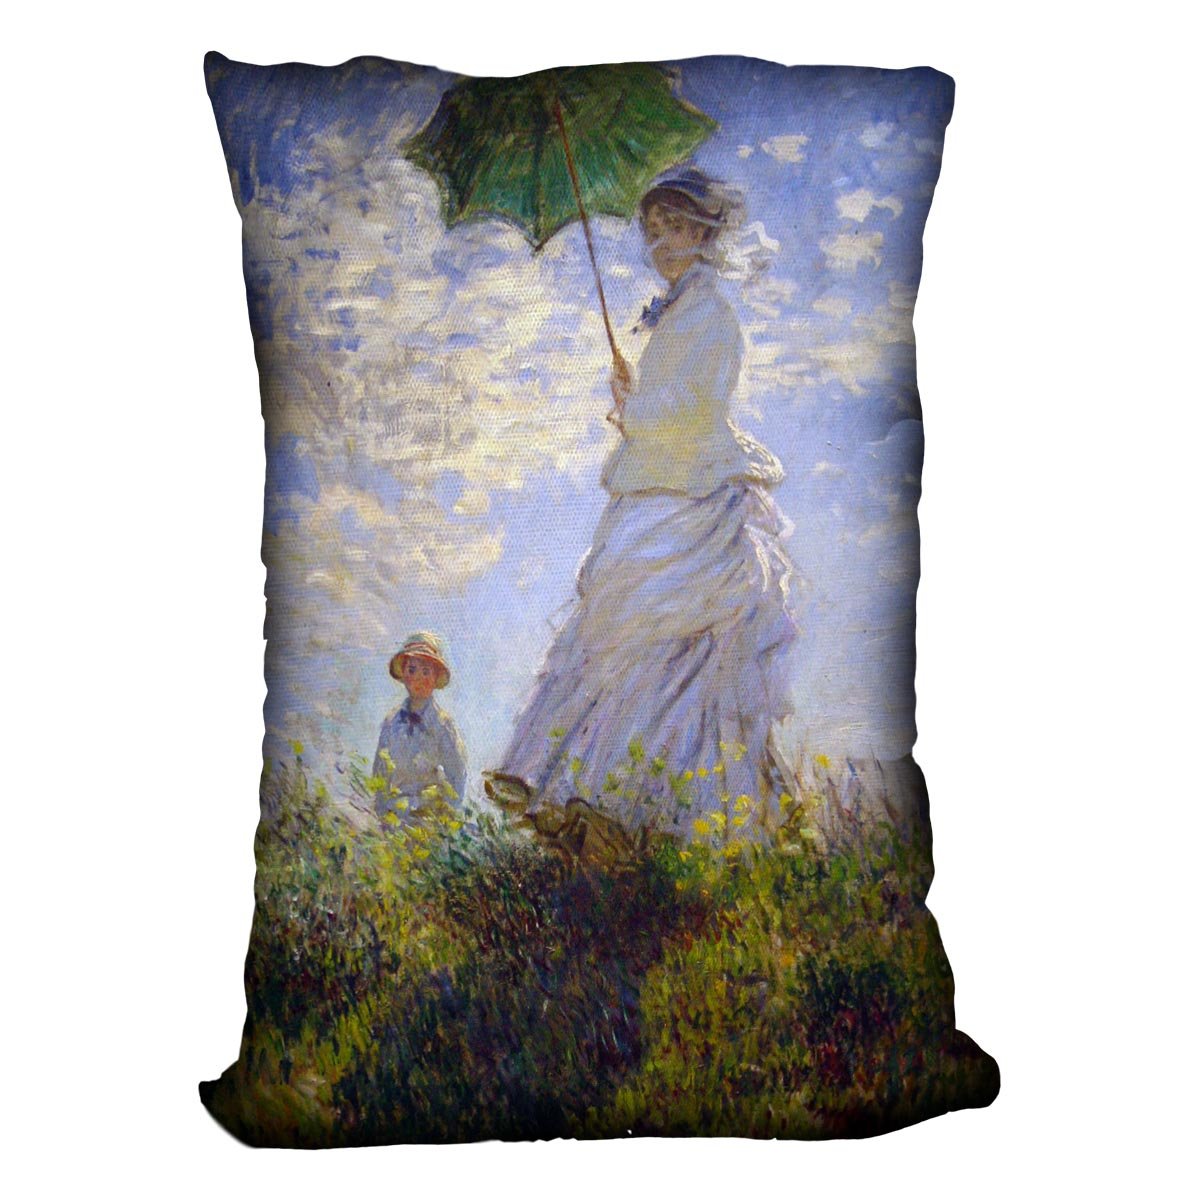 Monet Umbrella Throw Pillow